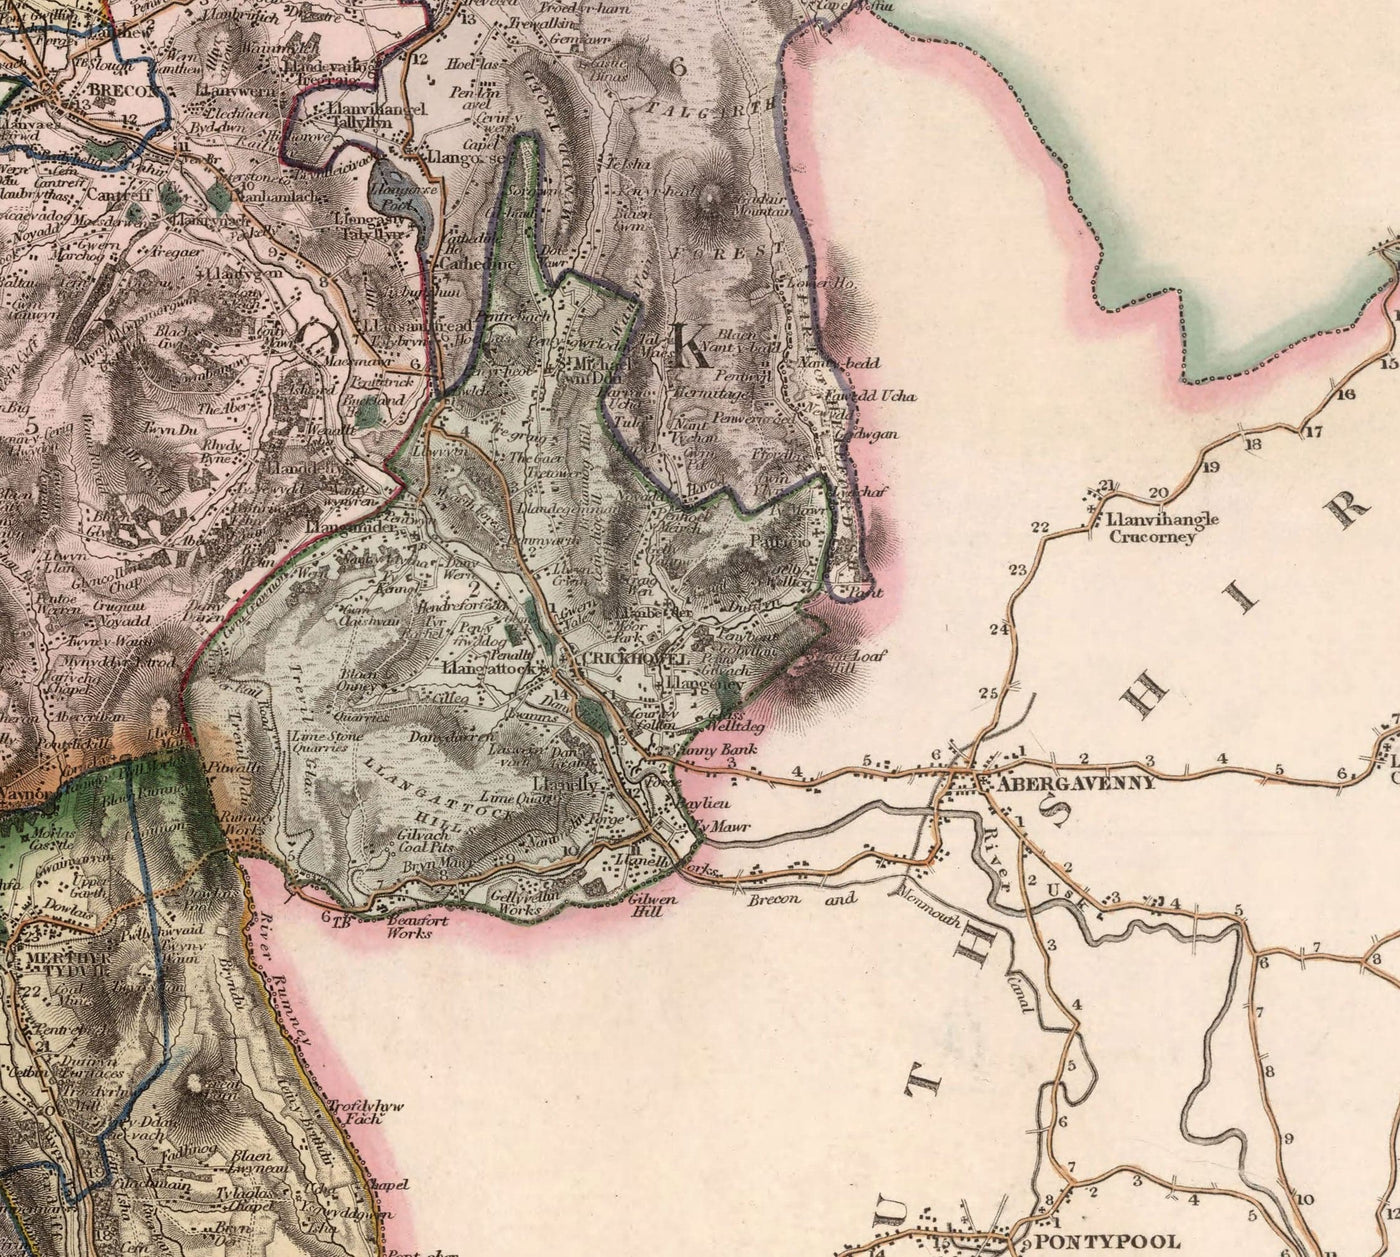 Viejo mapa de South Wales, 1829 por Greenwood & Co. - Glamorgan, Cardiff, Brecon, Swansea